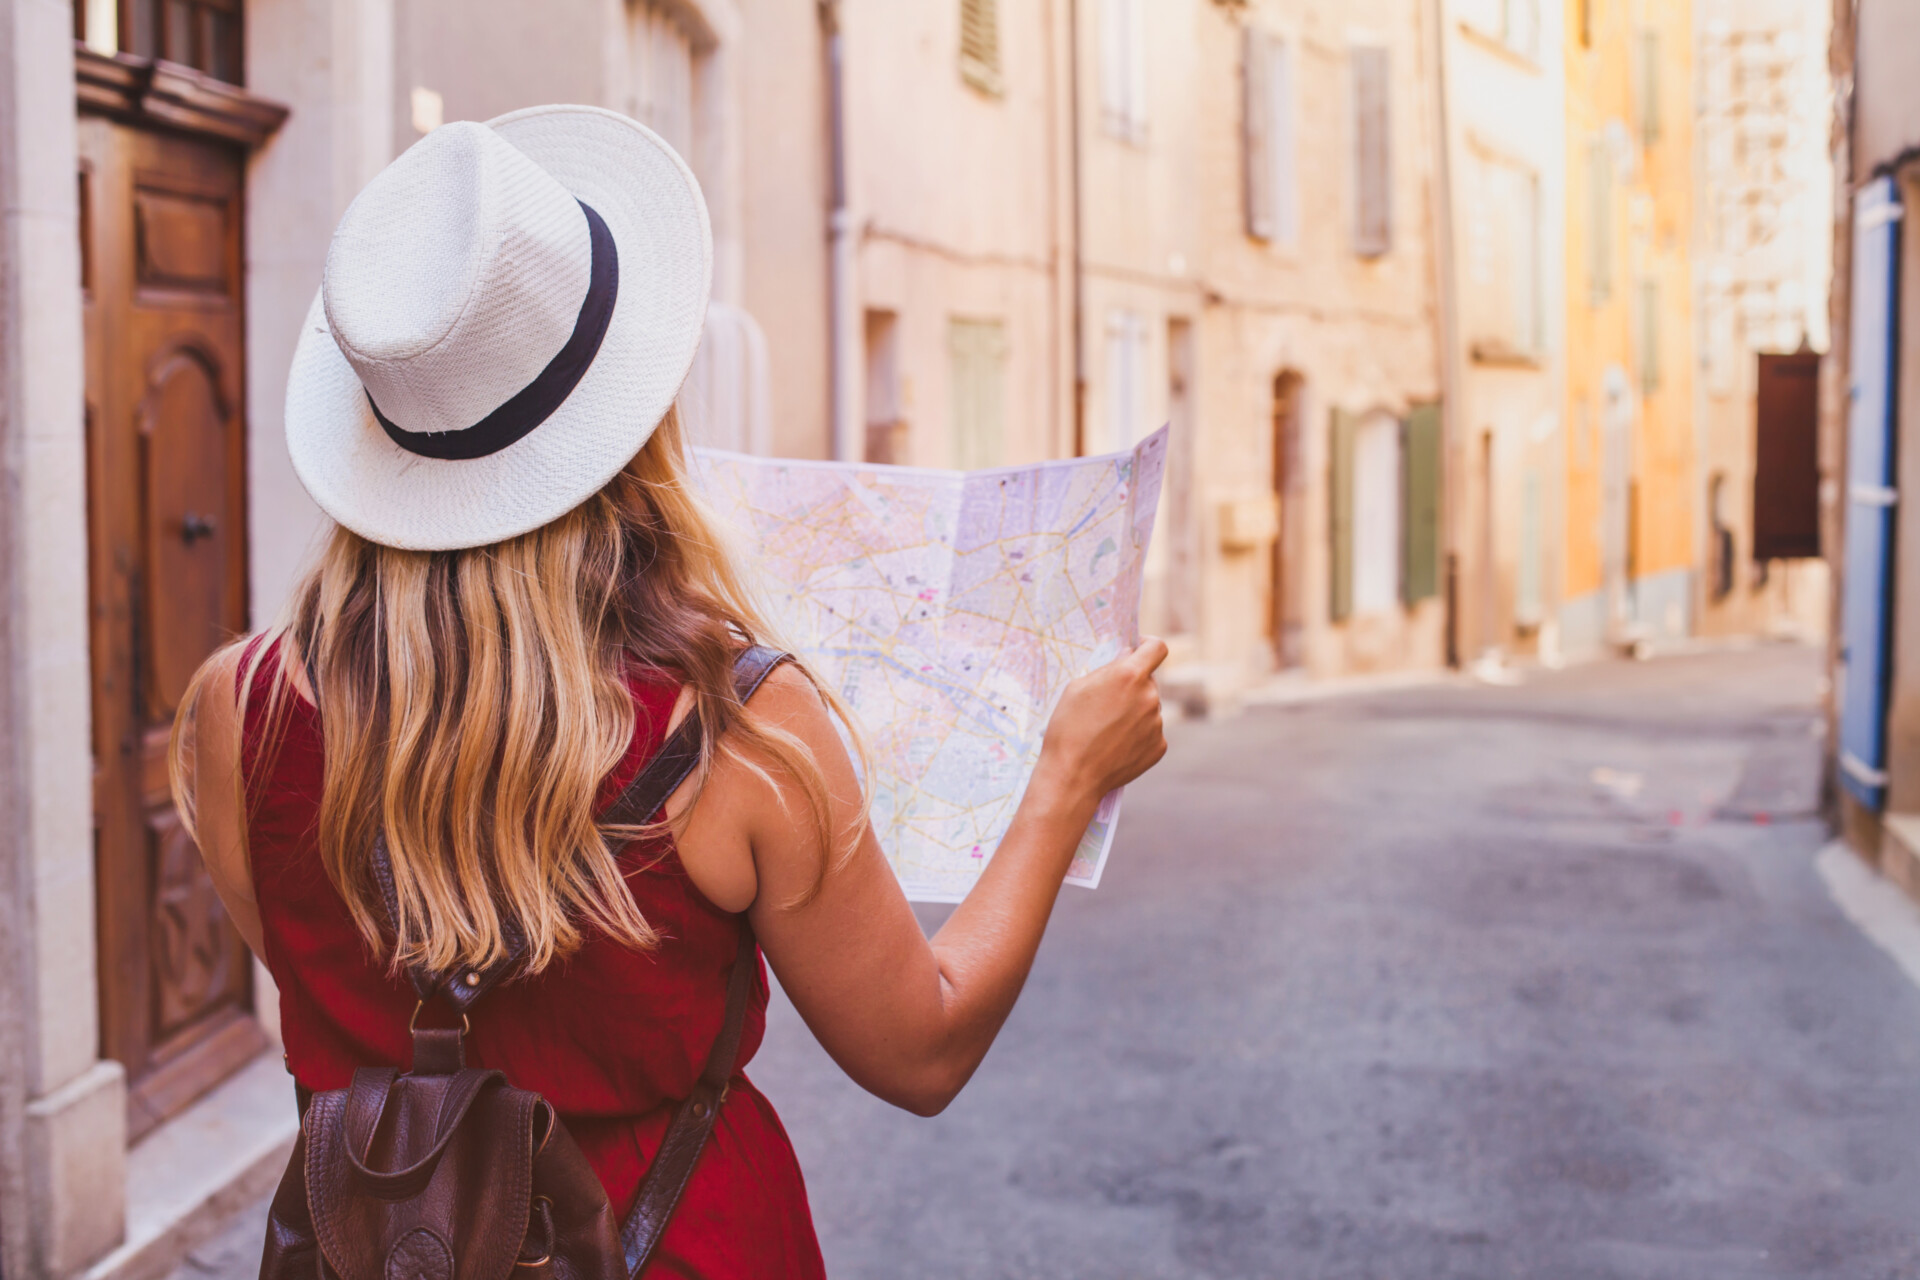 Eine Frau, von hinten betrachtet, die ein rotes Kleid trägt und einen weißen Hut mit schwarzer Krempe auf hat, steht in einer ruhigen Straße und hält eine geöffnete Landkarte. Sie scheint den Weg in einer Altstadt mit pastellfarbenen Gebäuden zu suchen.